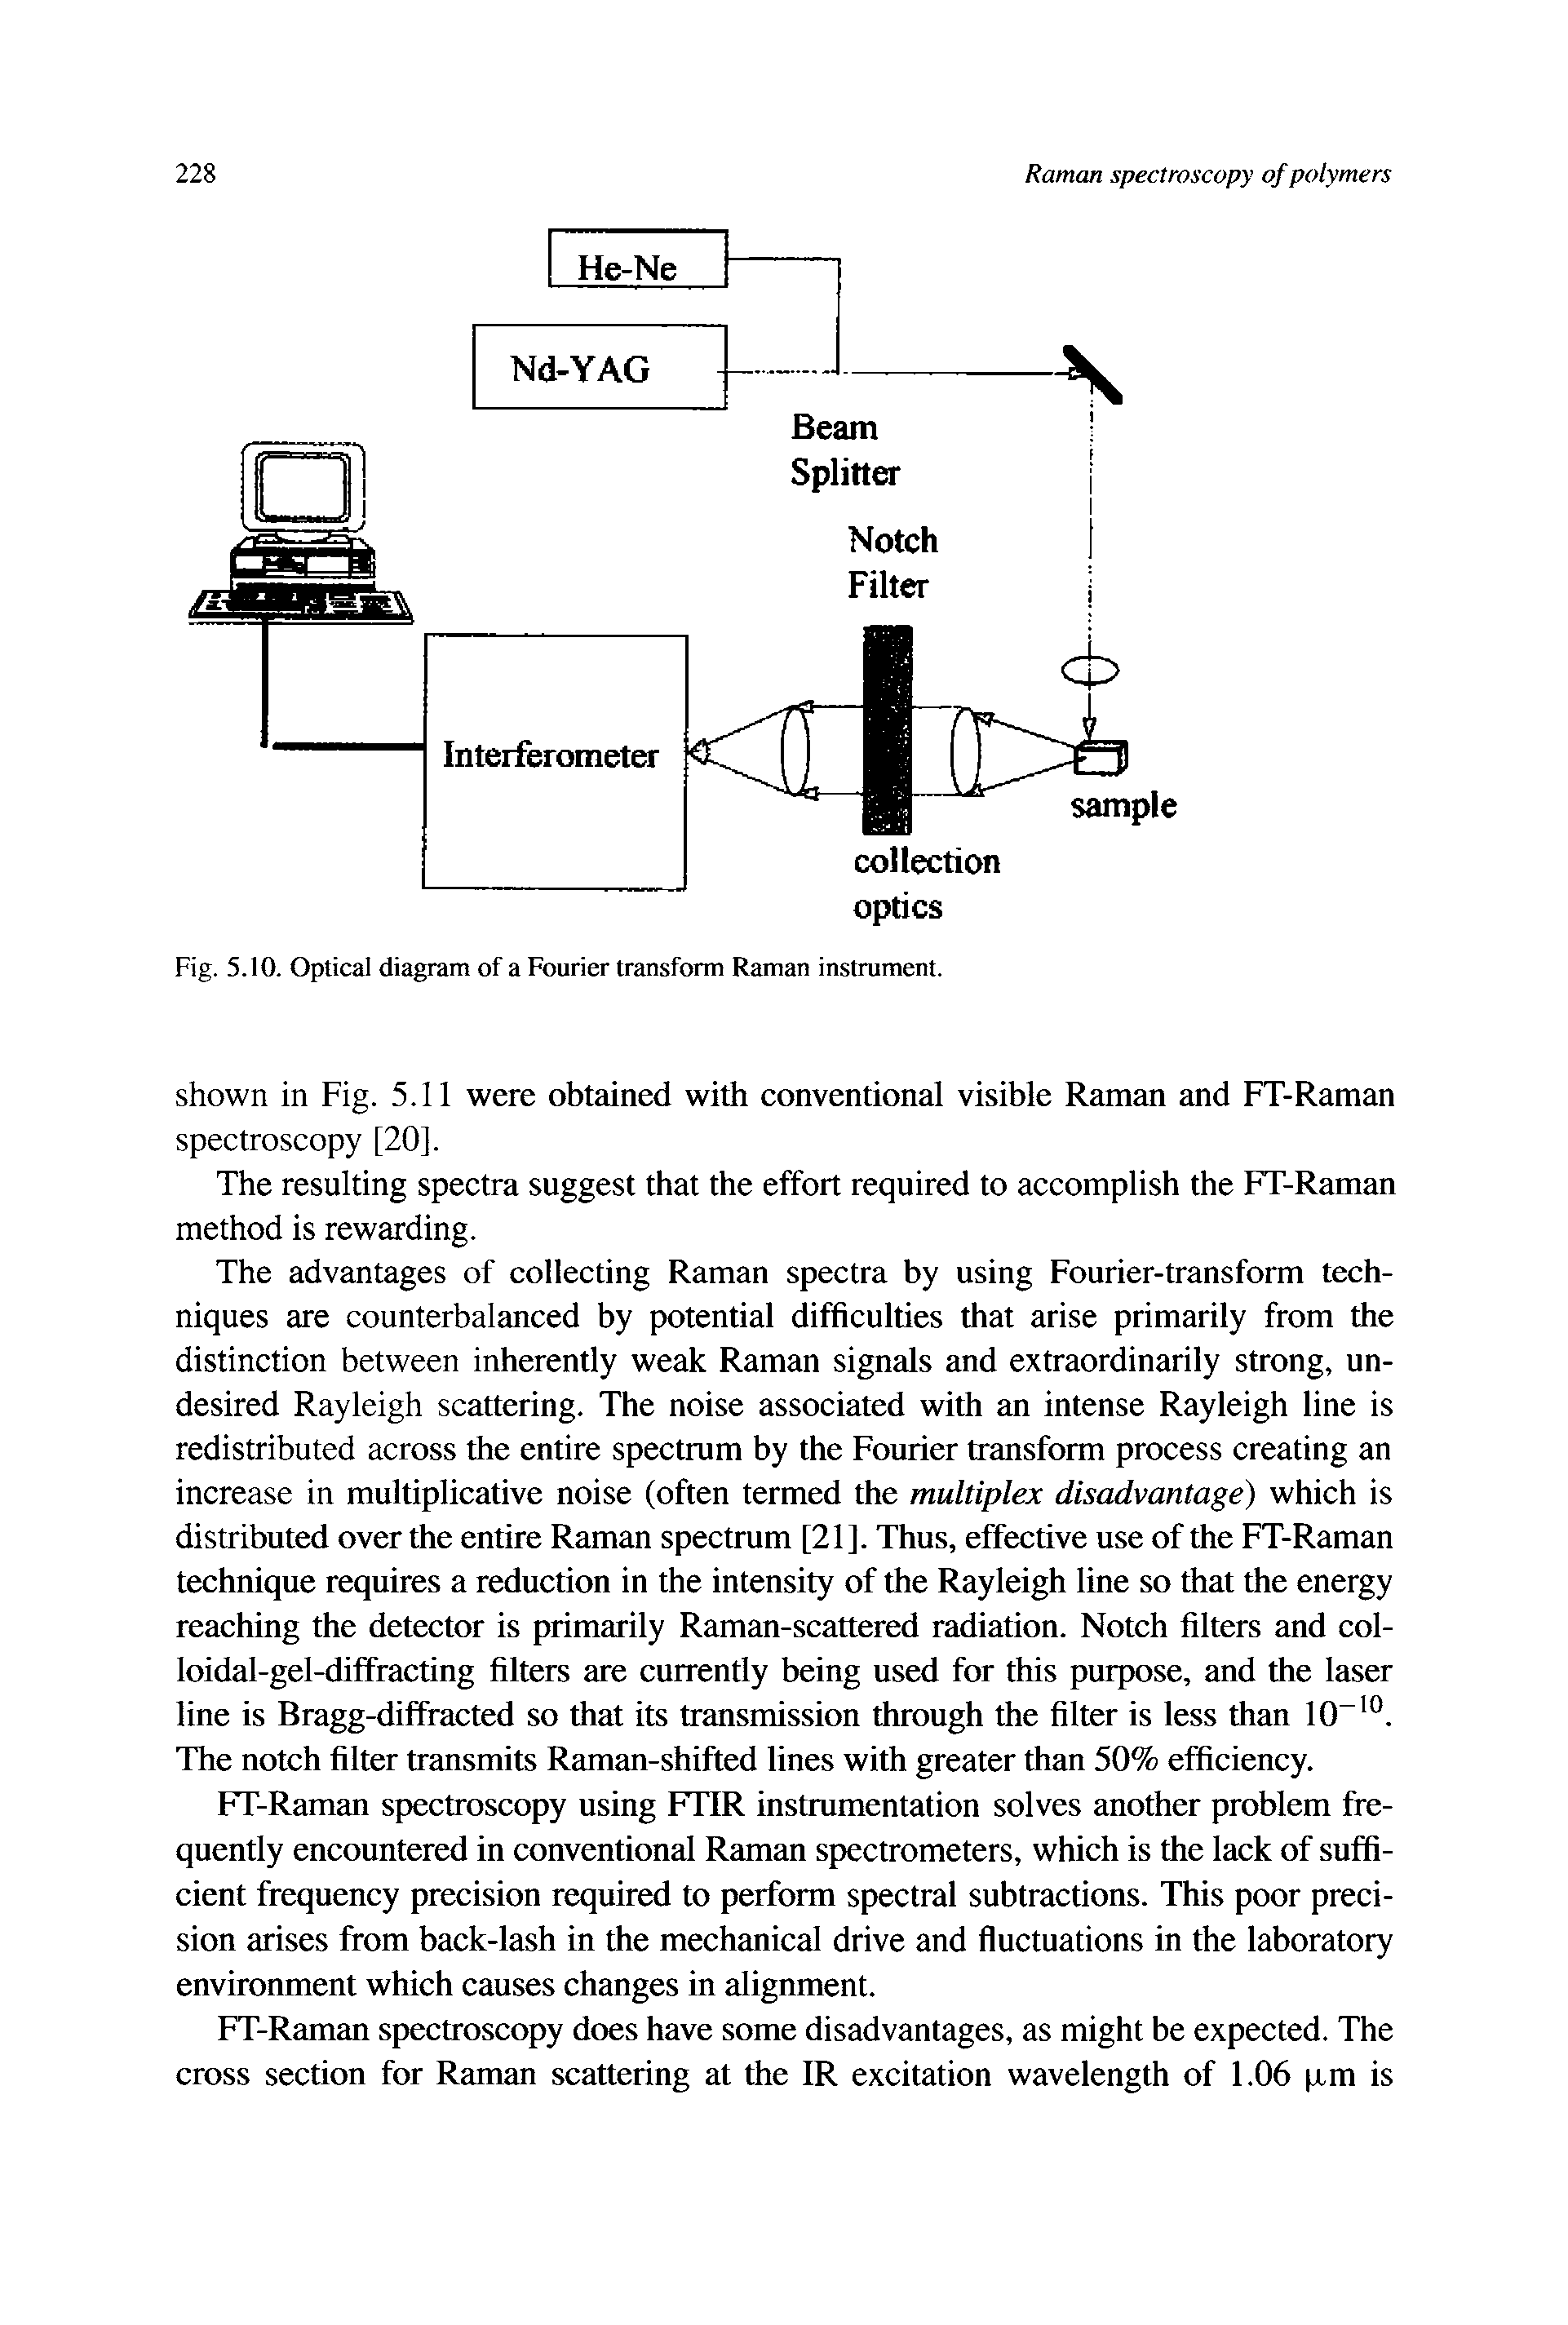 Fig. 5.10. Optical diagram of a Fourier transform Raman instrument.